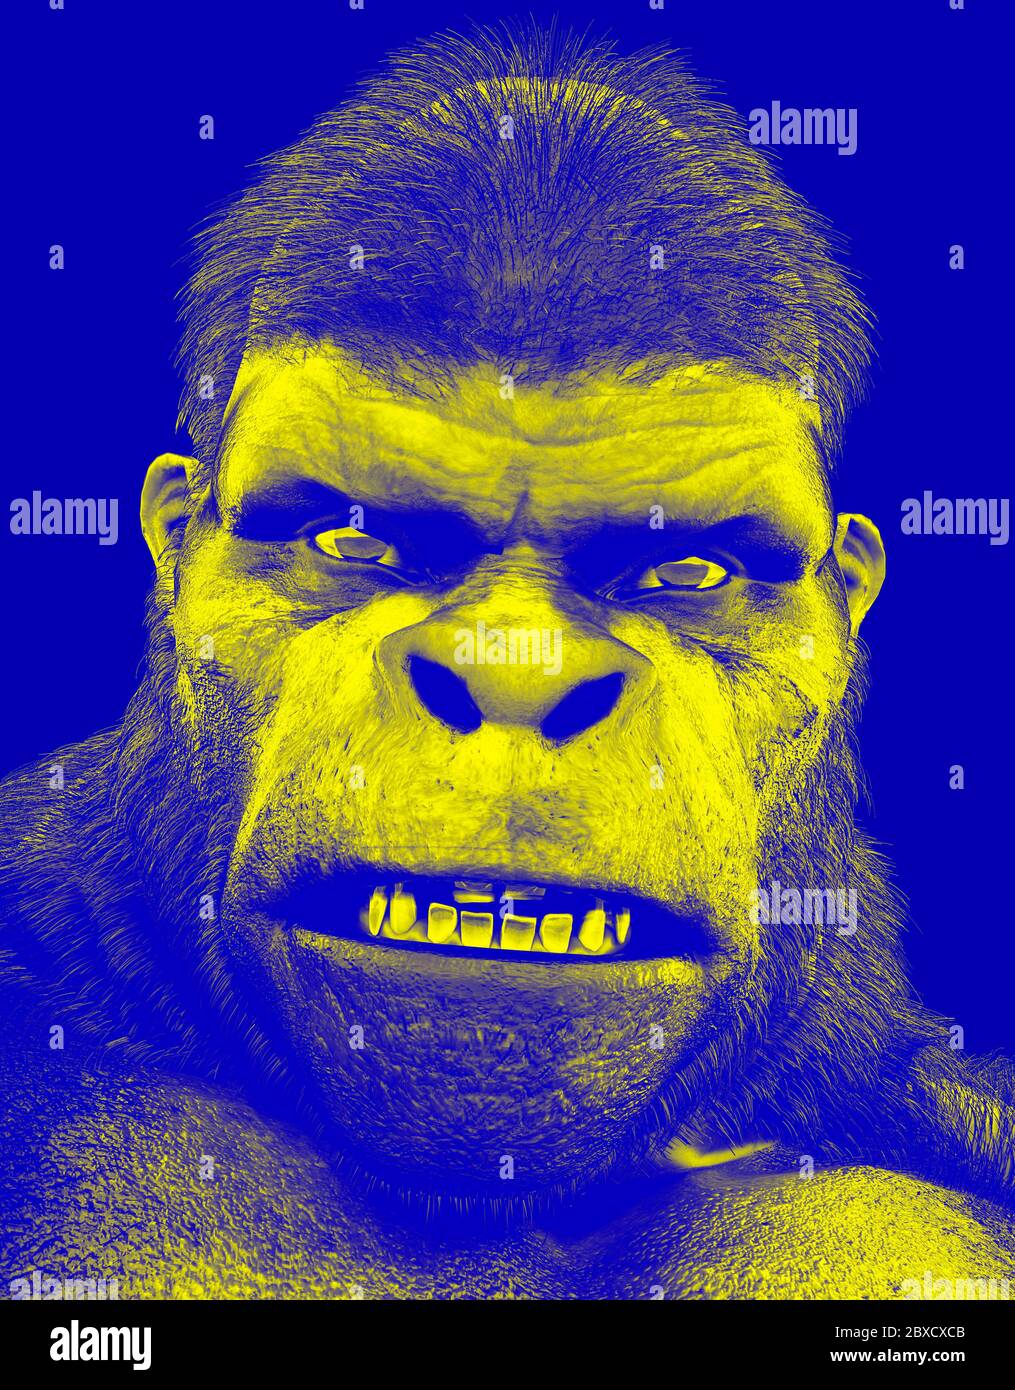 duotone angry gorilla jaune et bleu mettra un peu de plaisir à vos créations, illustration 3d Banque D'Images